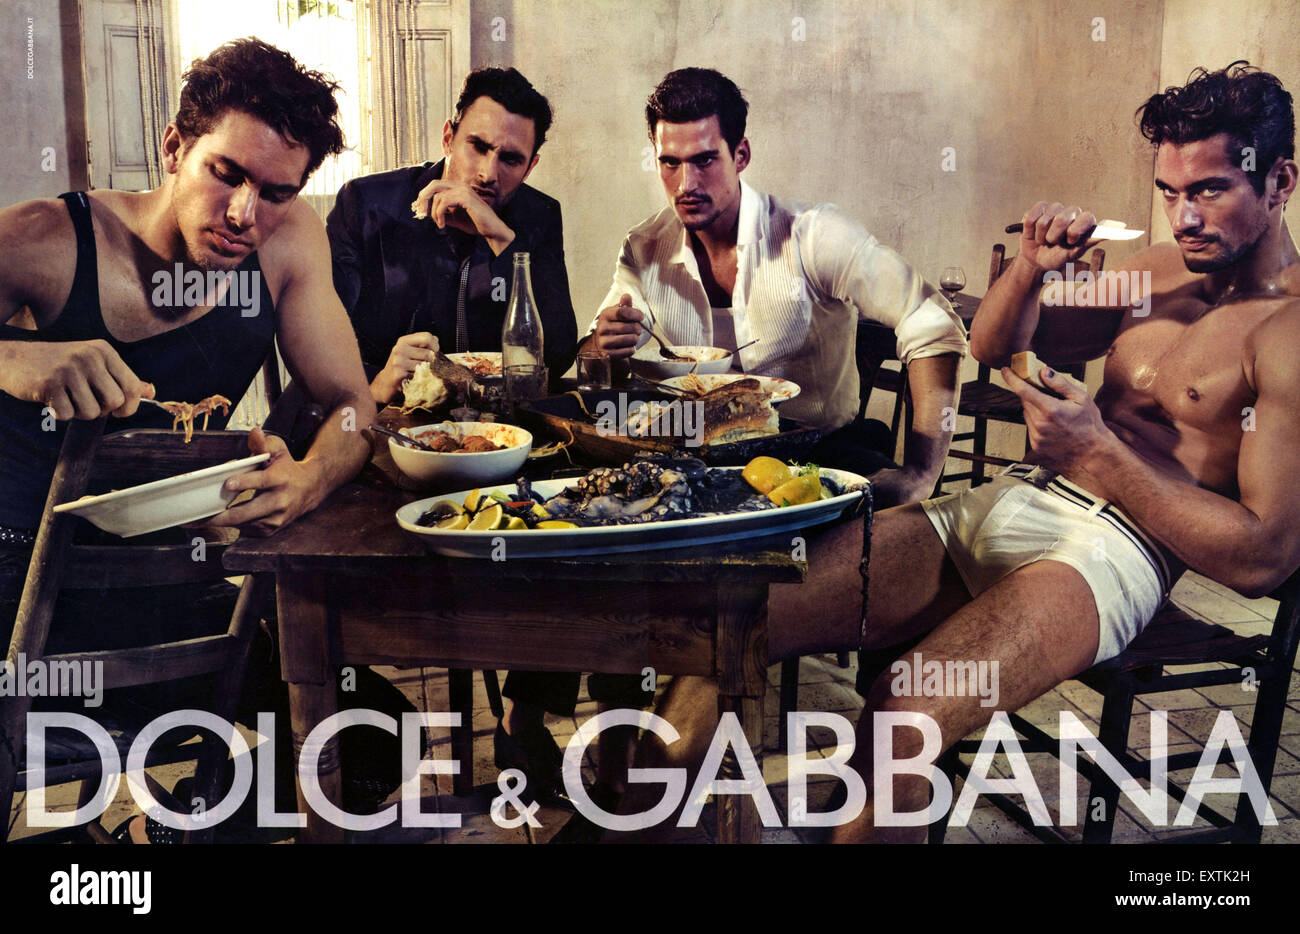 Dolce Gabbana Advert Banque d'image et 